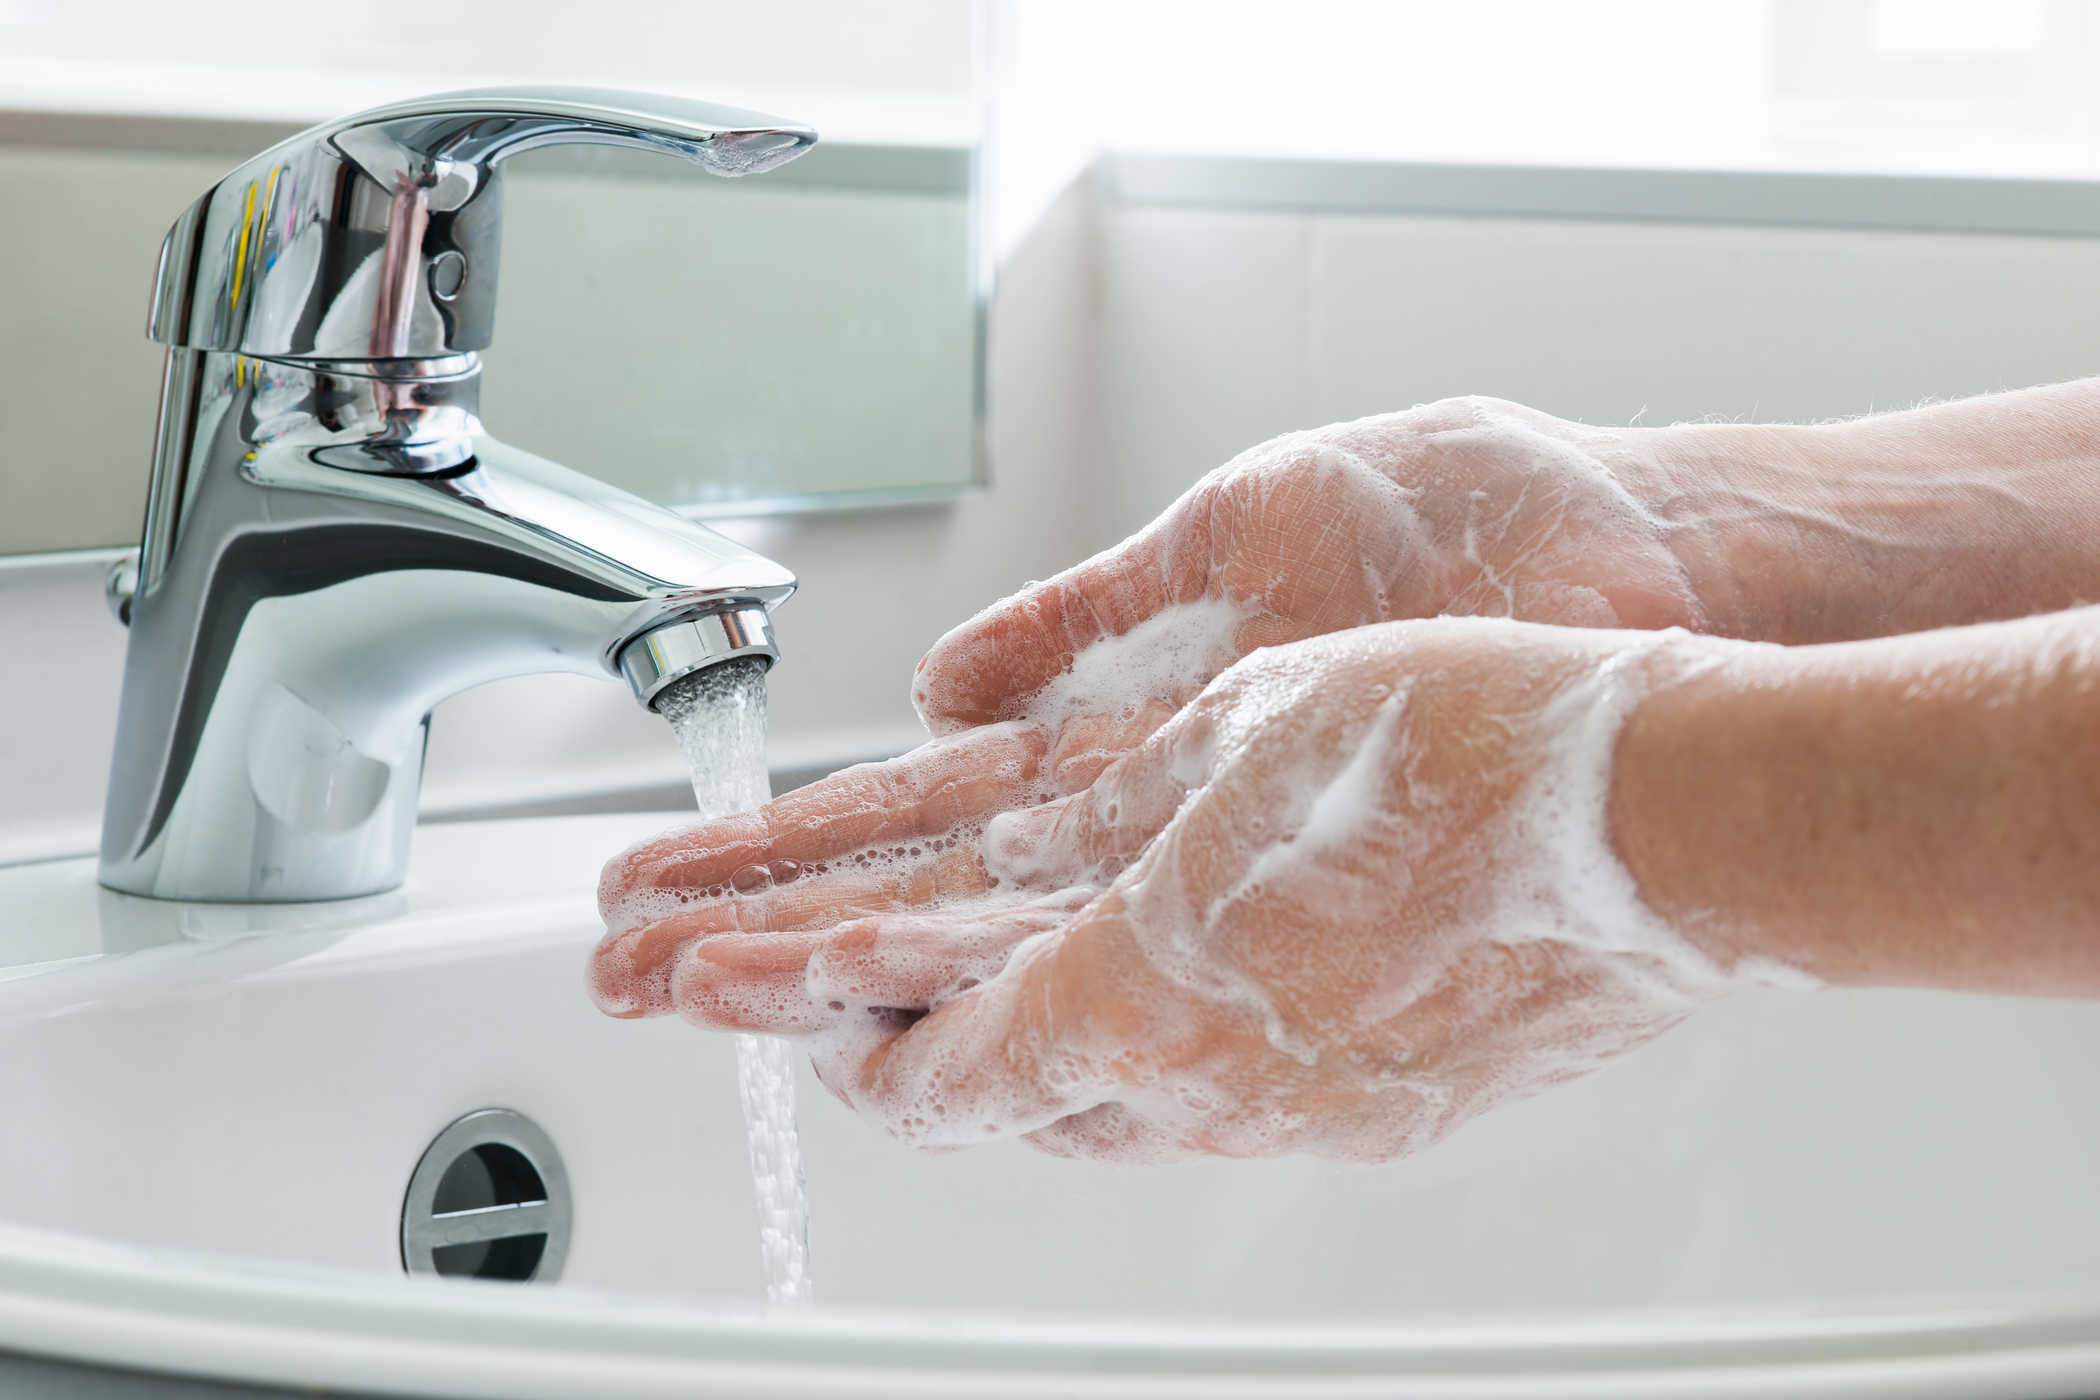   Nên rửa tay bằng xà phòng để phòng tránh bệnh hiệu quả  